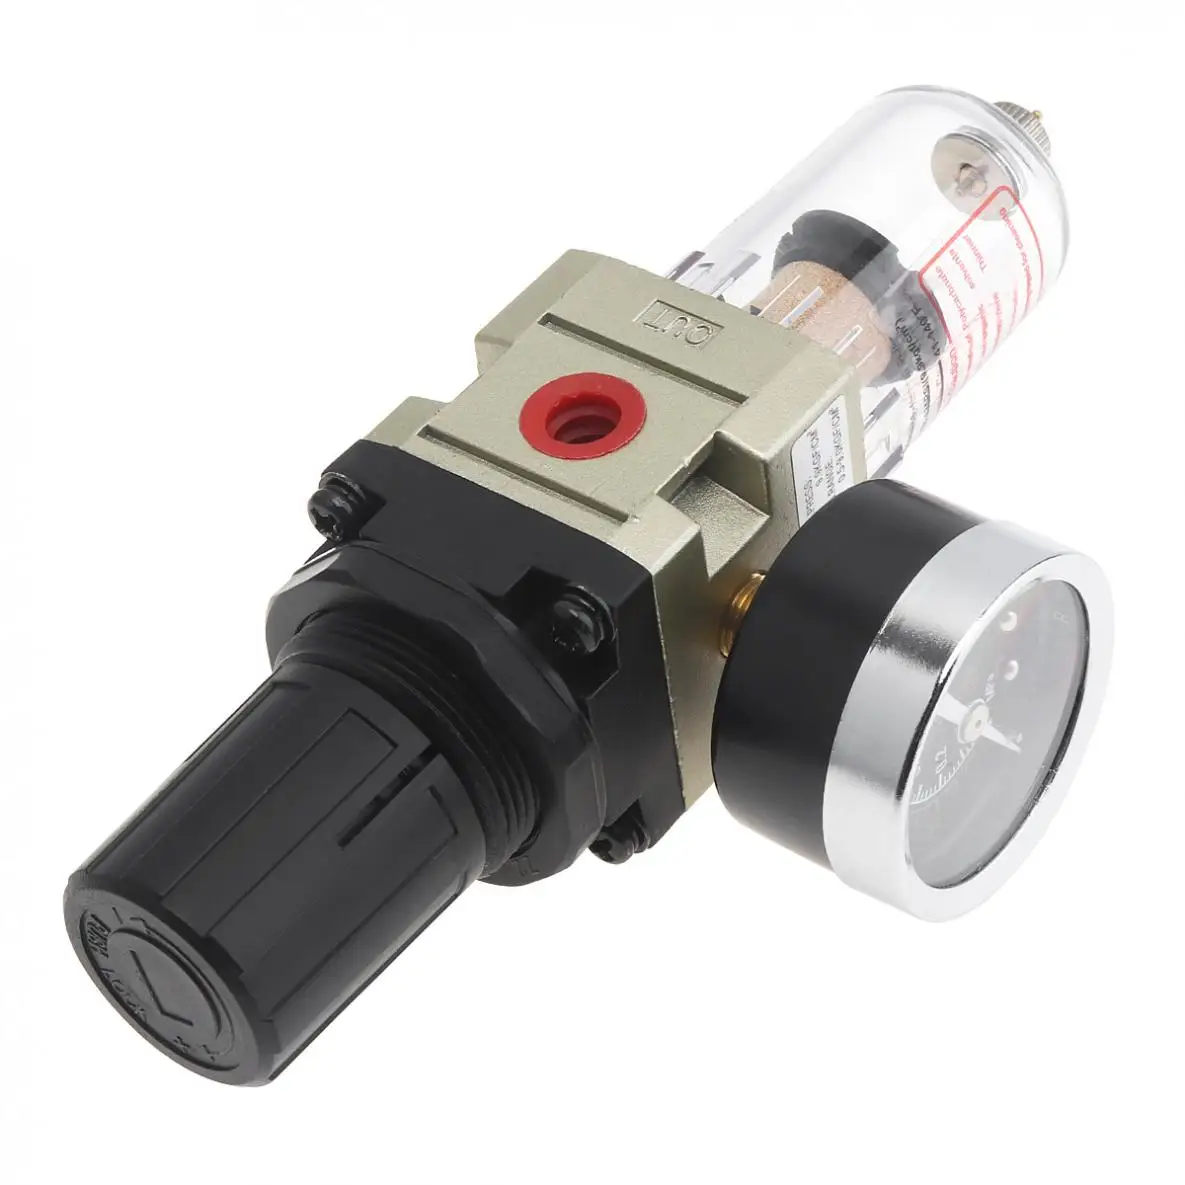 Воздушный компрессор 0-1.0mpa Регулируемый регулятор сепаратора воды масла PT1/4(мм) Калибр с манометром